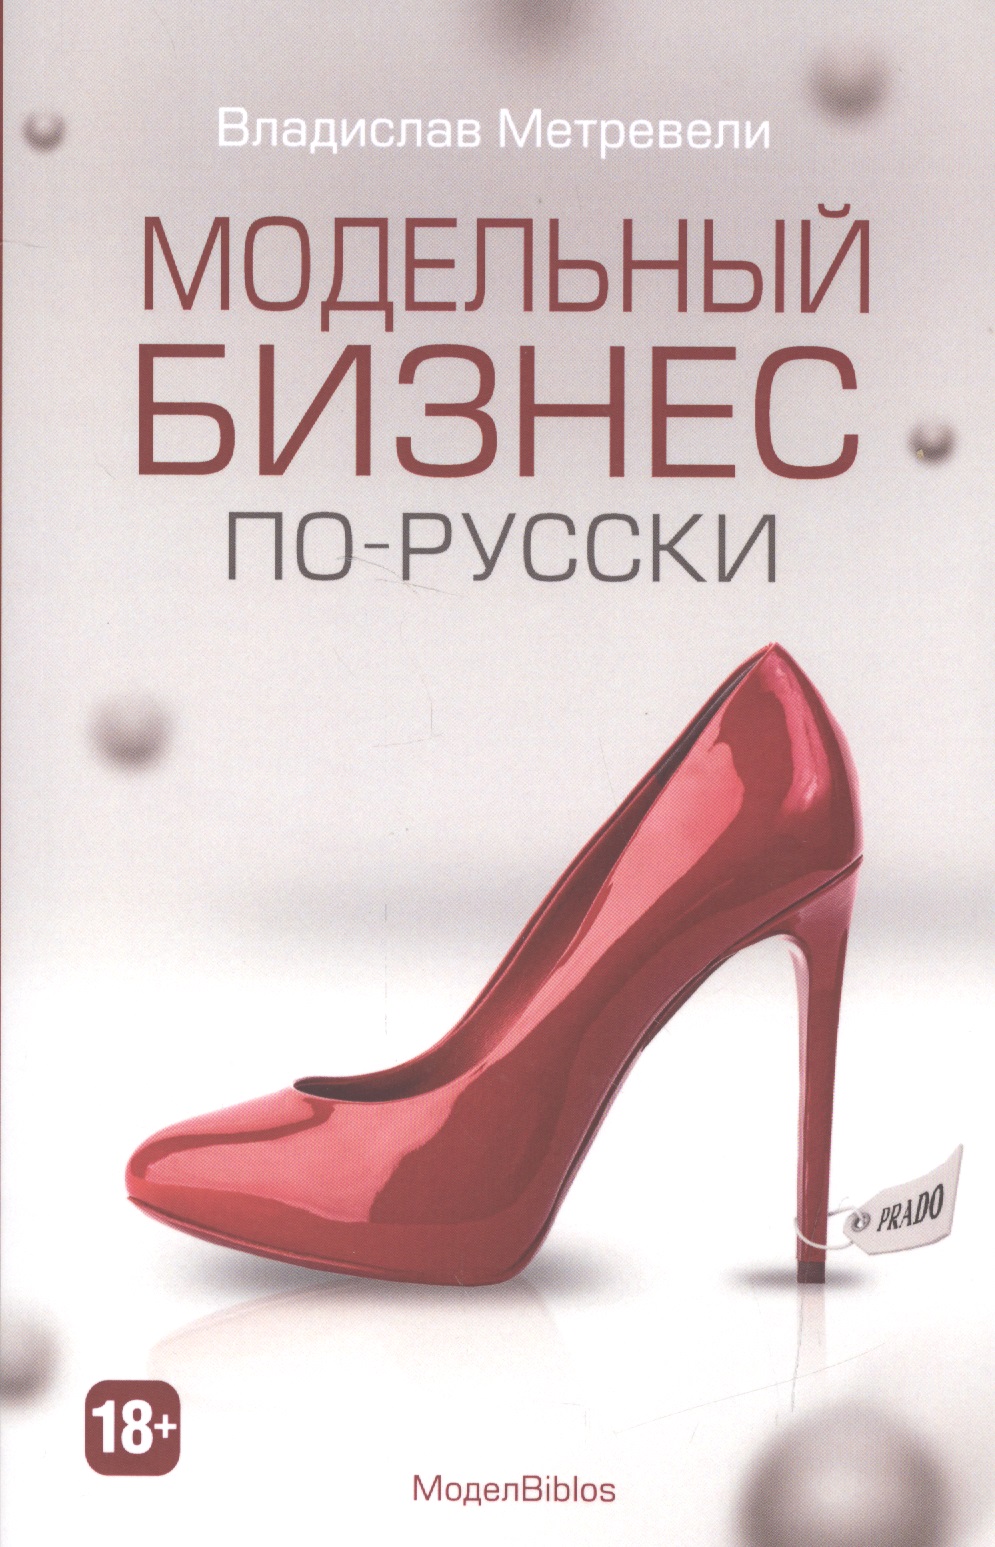 Модельный бизнес по-русски (МодельBiblos)